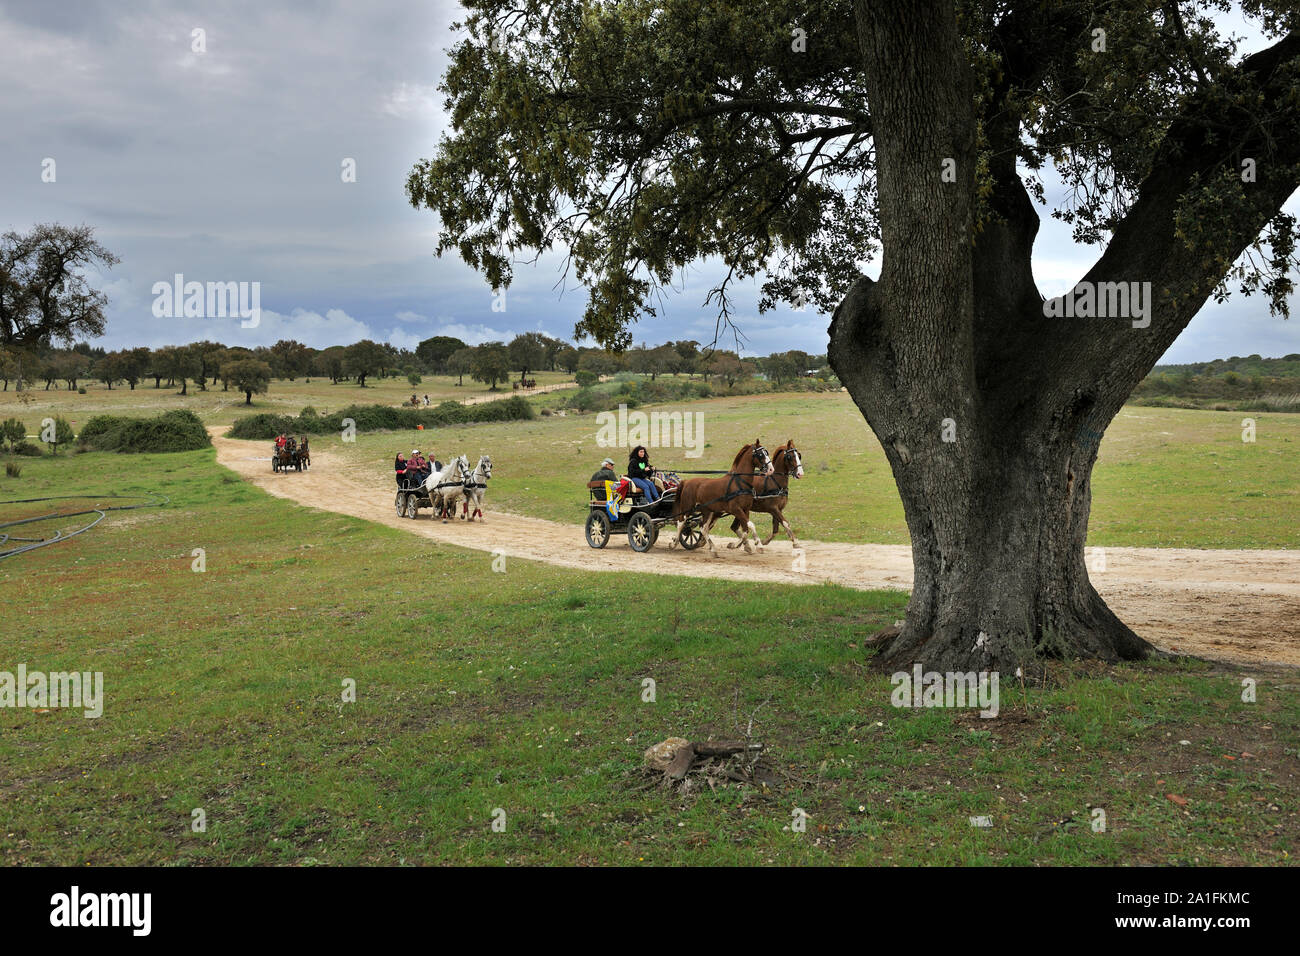 Un pellegrinaggio a cavallo in Alentejo. Cavallo persone praticare equitazione come espressione del patrimonio di cultura e di fede attraverso il pellegrinaggio a cavallo. V Foto Stock